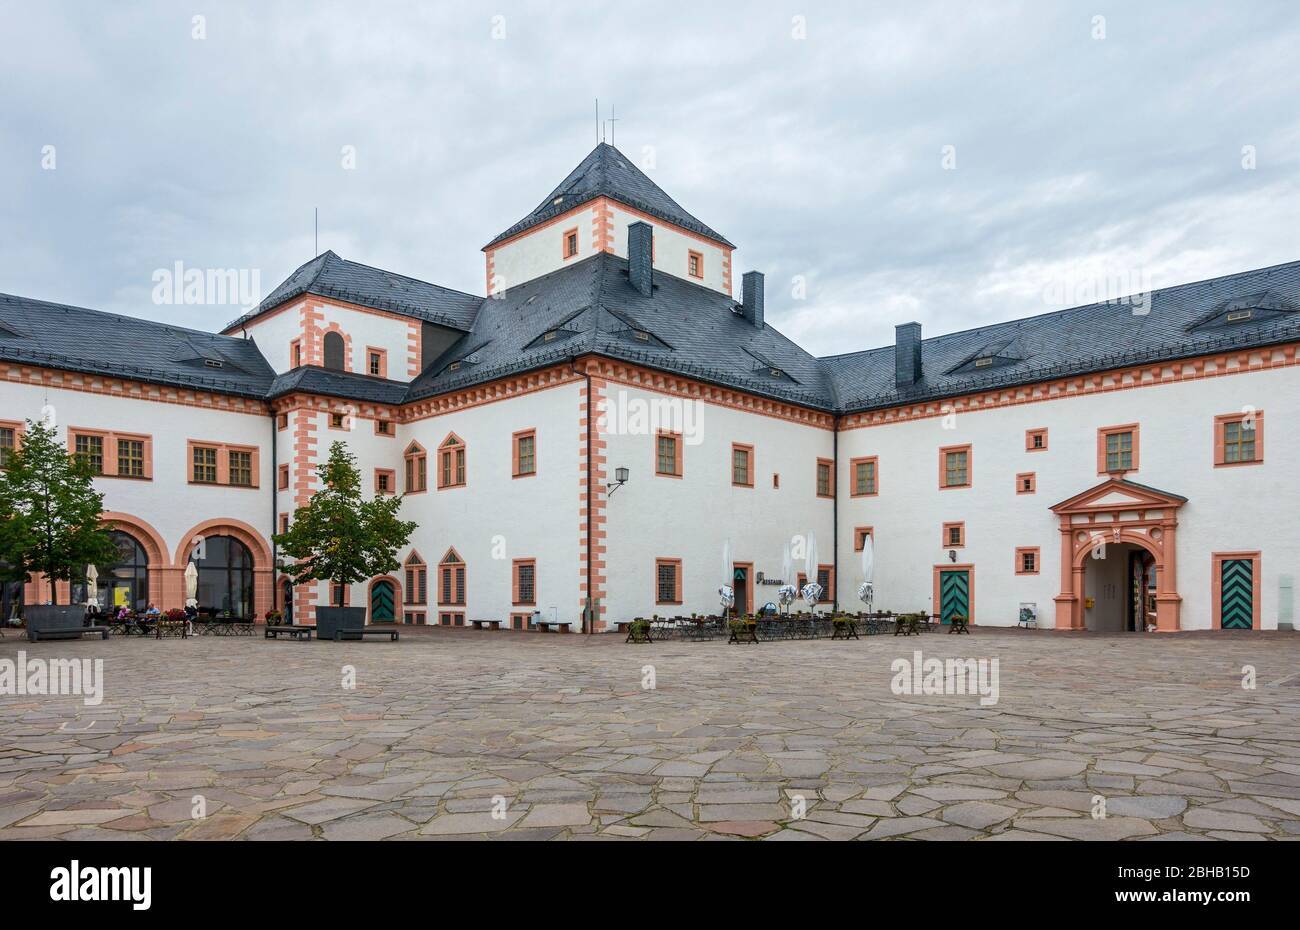 Alemania, Sajonia, Augustusburg, Castillo de Augustusburg, el castillo alberga actualmente un albergue juvenil, un museo de motocicletas, un museo de autobuses y un museo para la caza y la ornitología. Foto de stock